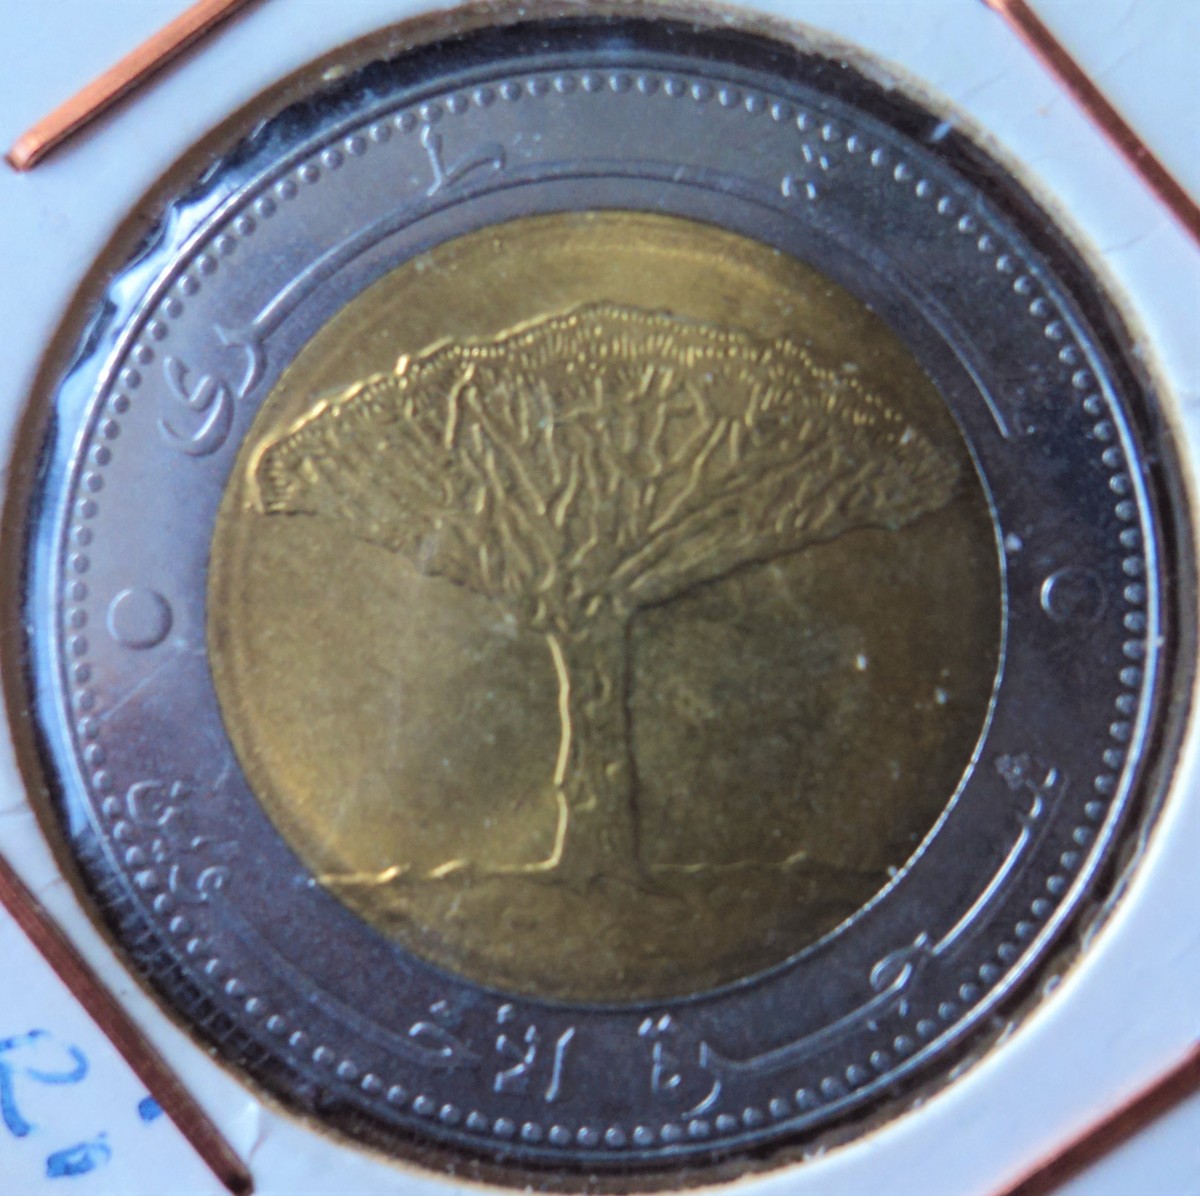 El árbol dragón y la moneda de 20 rials de Yemen